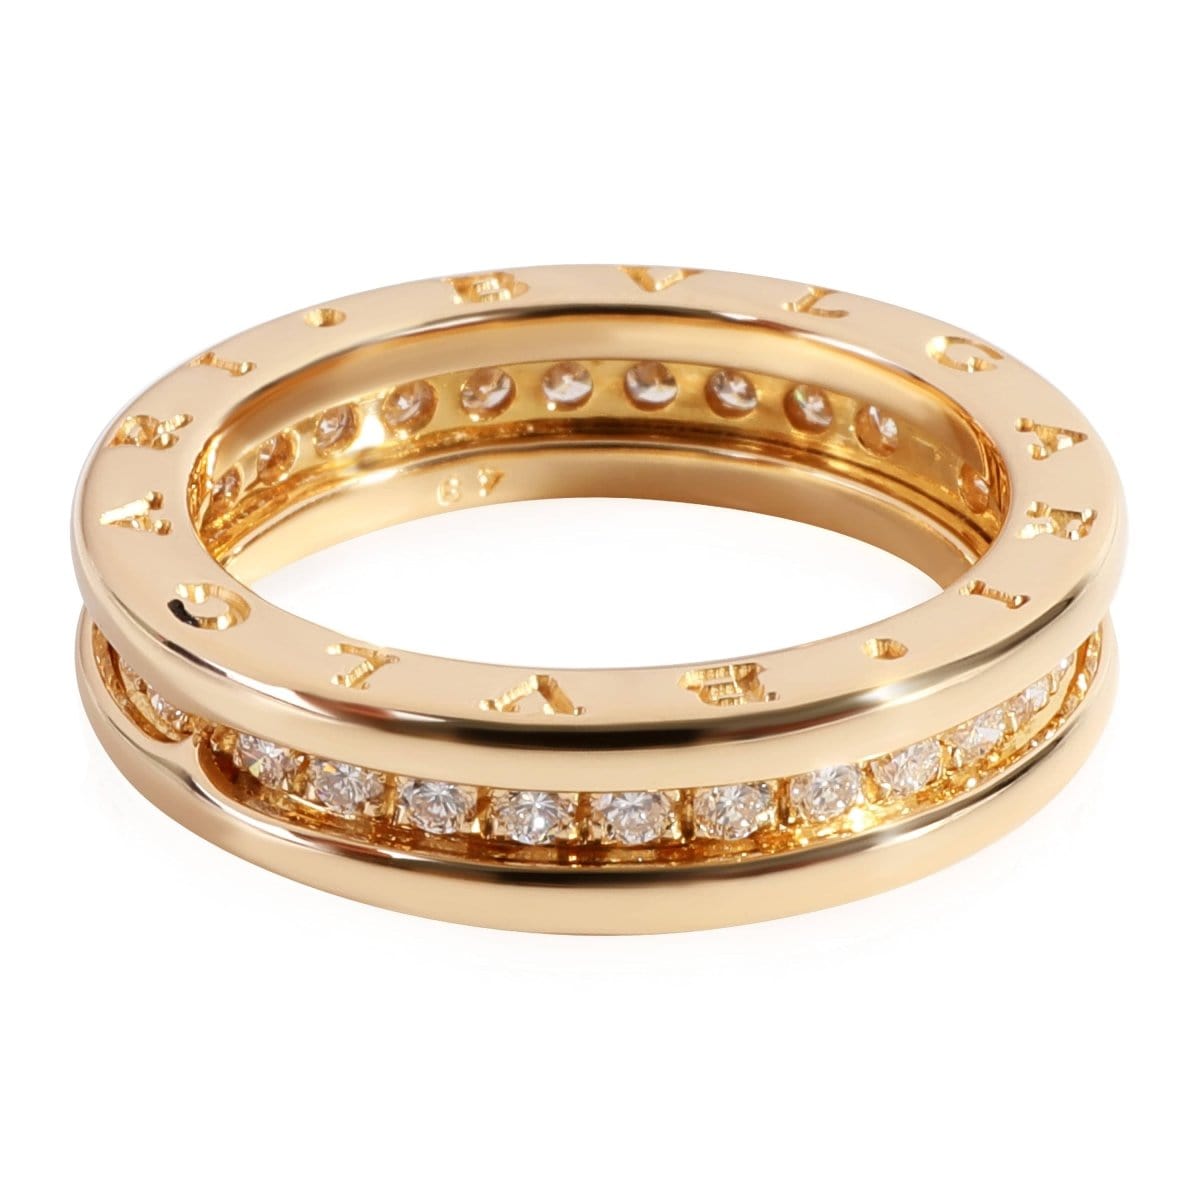 118616, BVLGARI B.Zero1 Diamond Ring in 18k Yellow Gold 0.45 CTW, Size 49